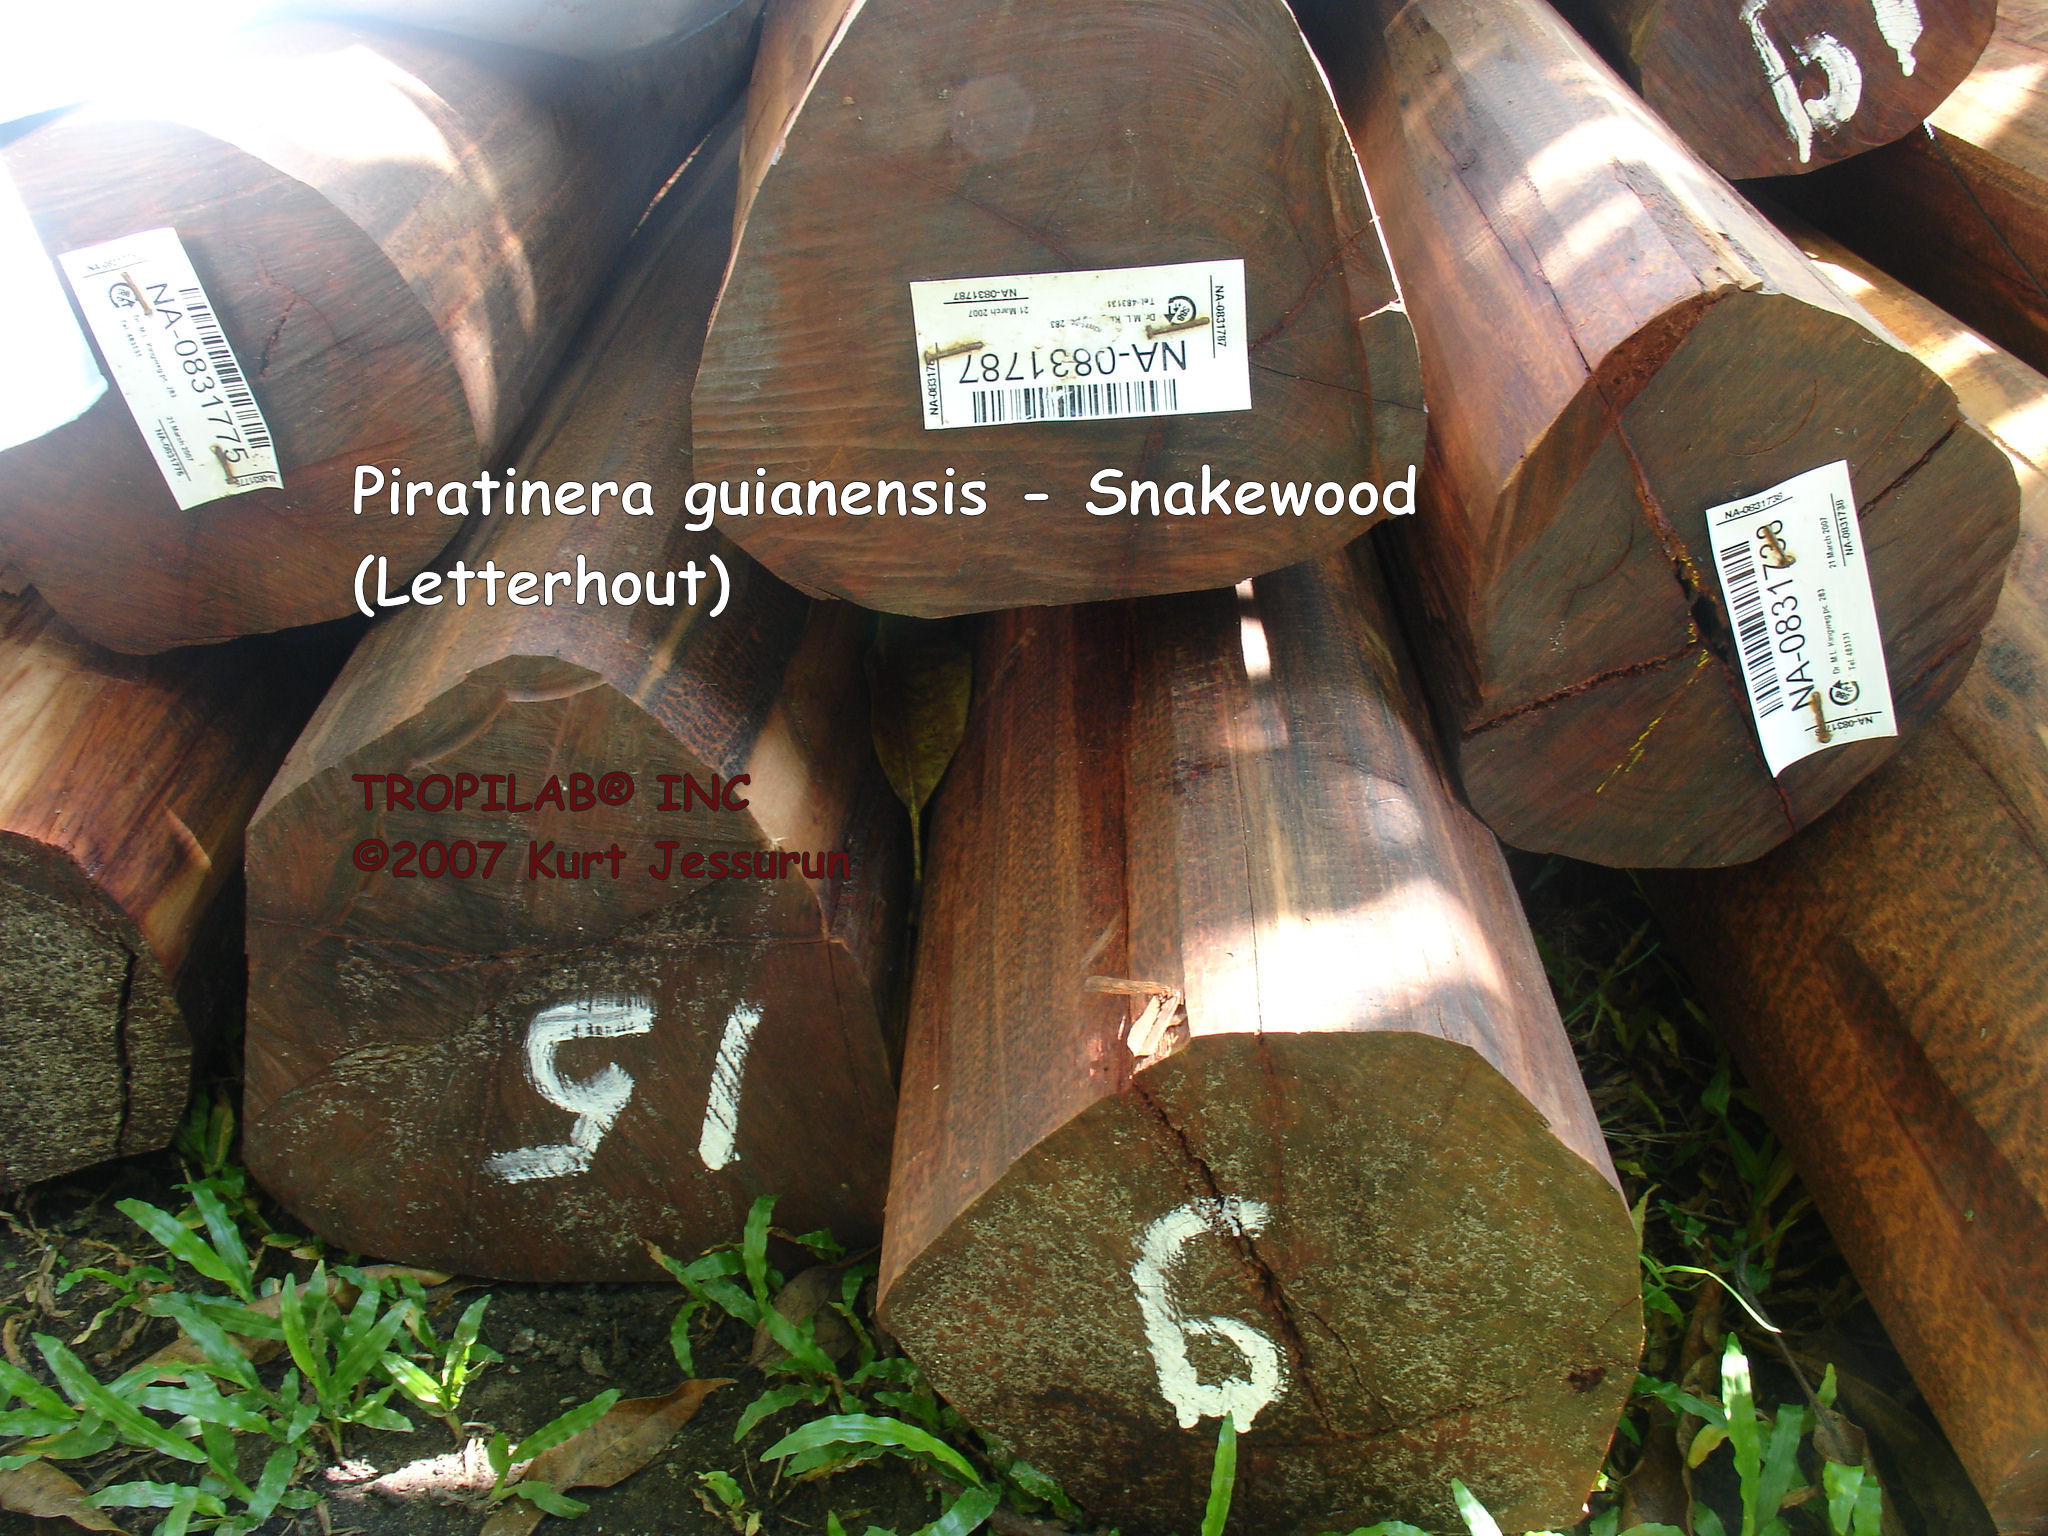 Piratinera guianensis - Snakewood